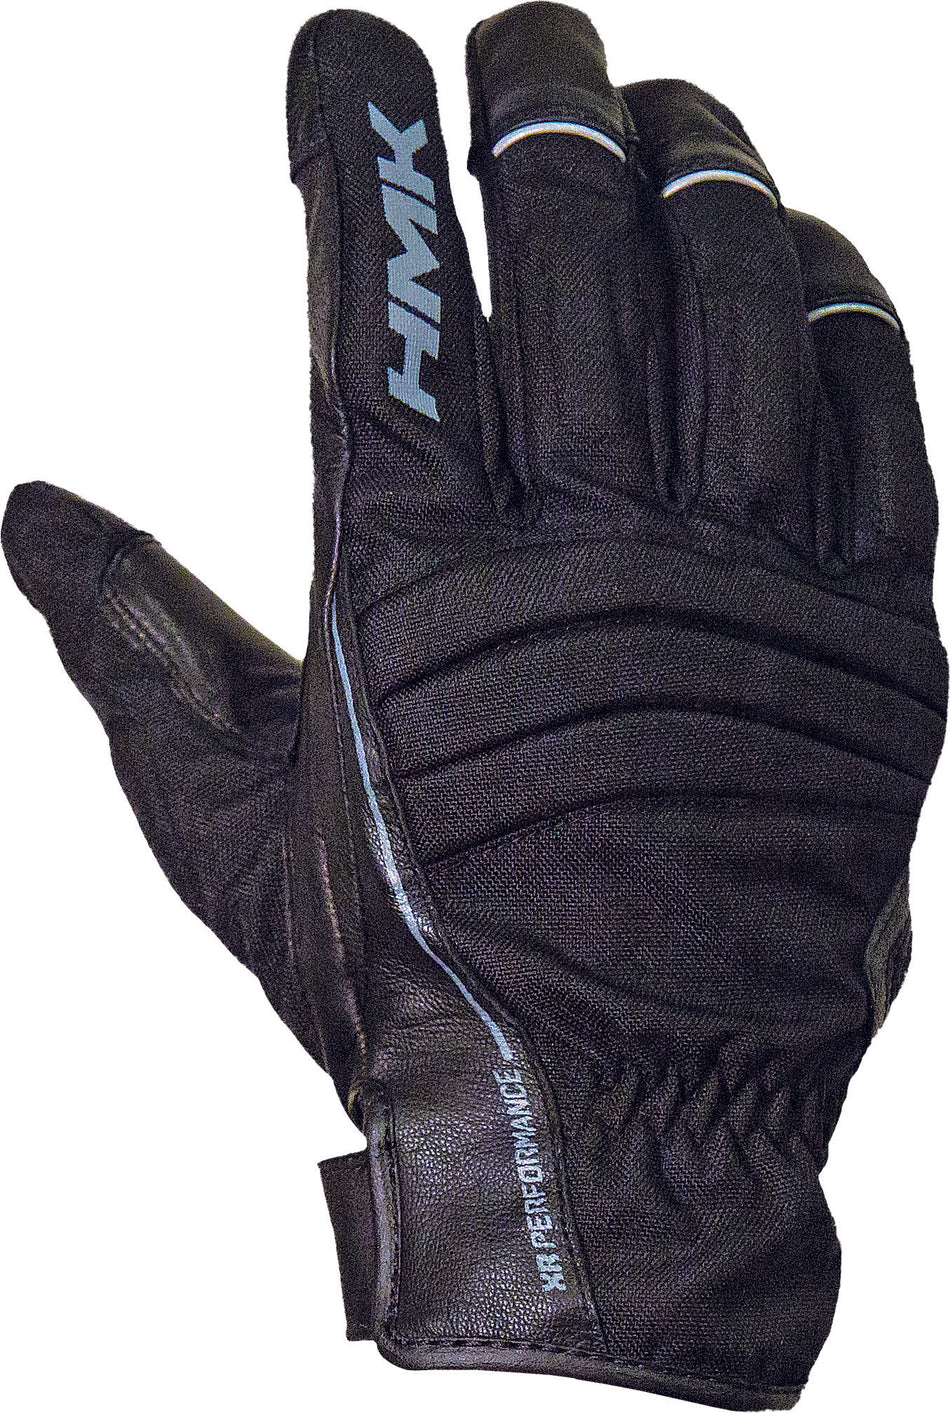 HMK Team Glove Xl S/M Black HM7GTEABX